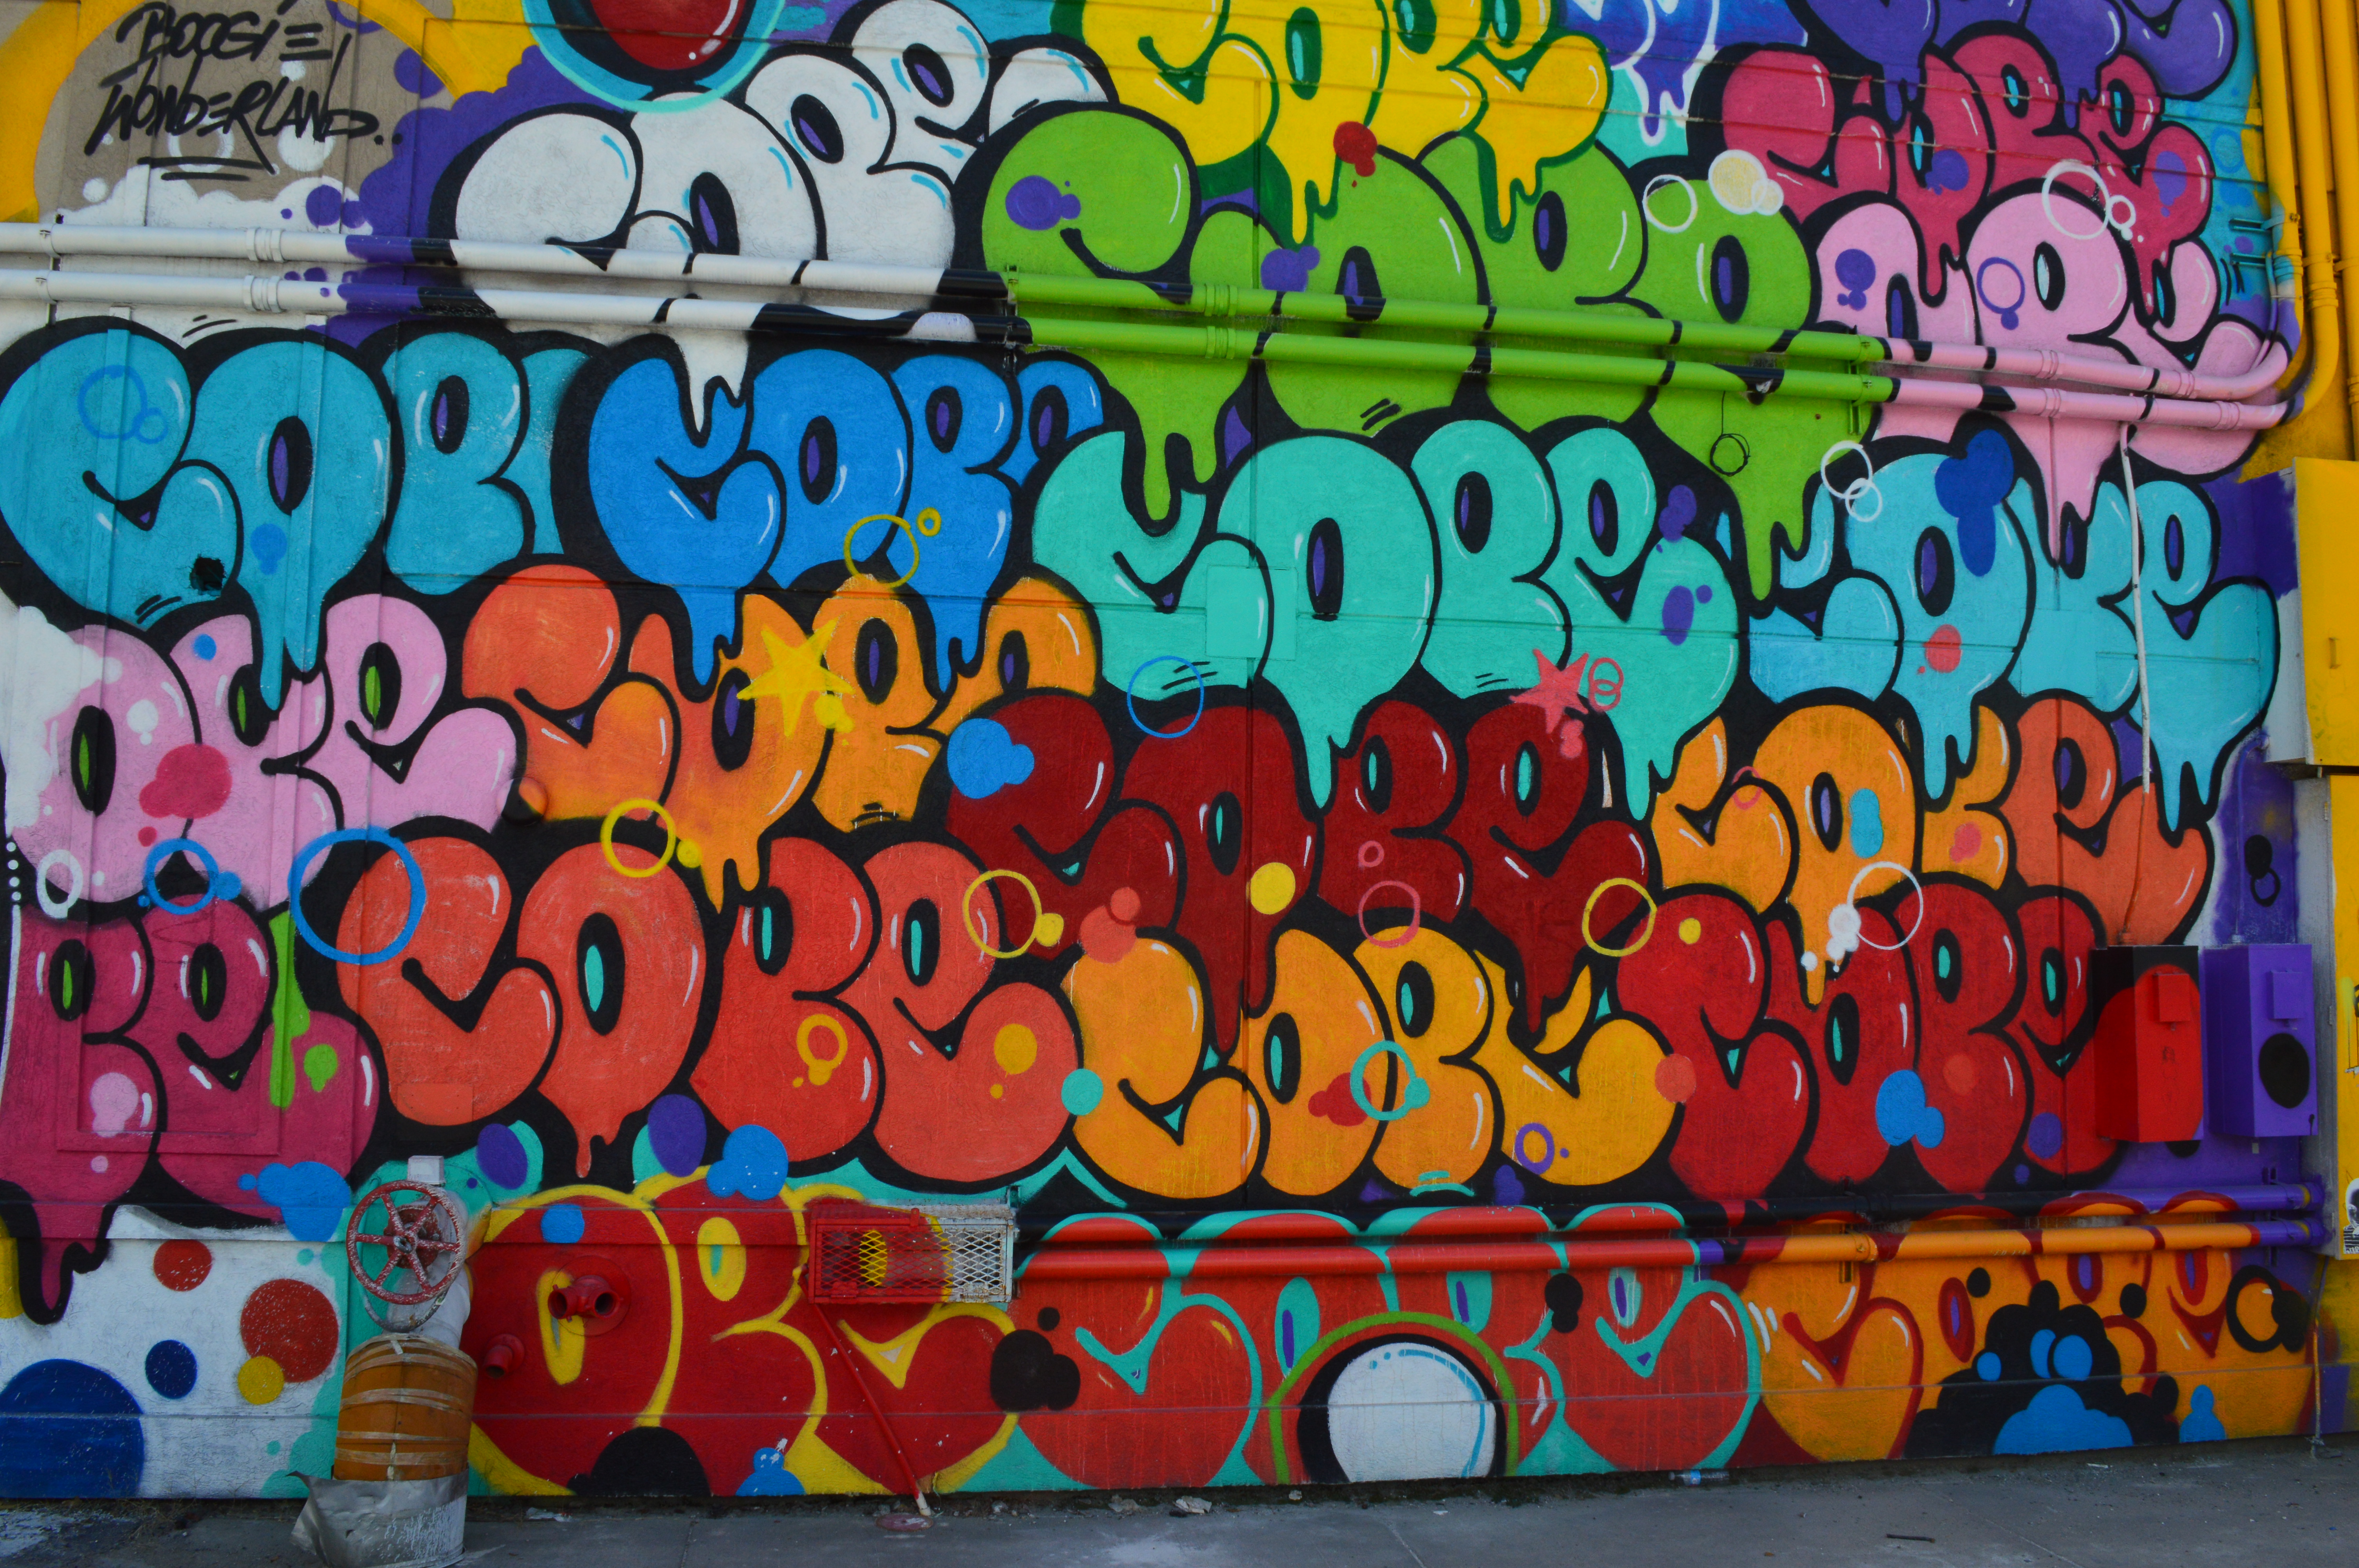 Free photo: Walls with graffiti - City, Colums, Graffiti - Free ...